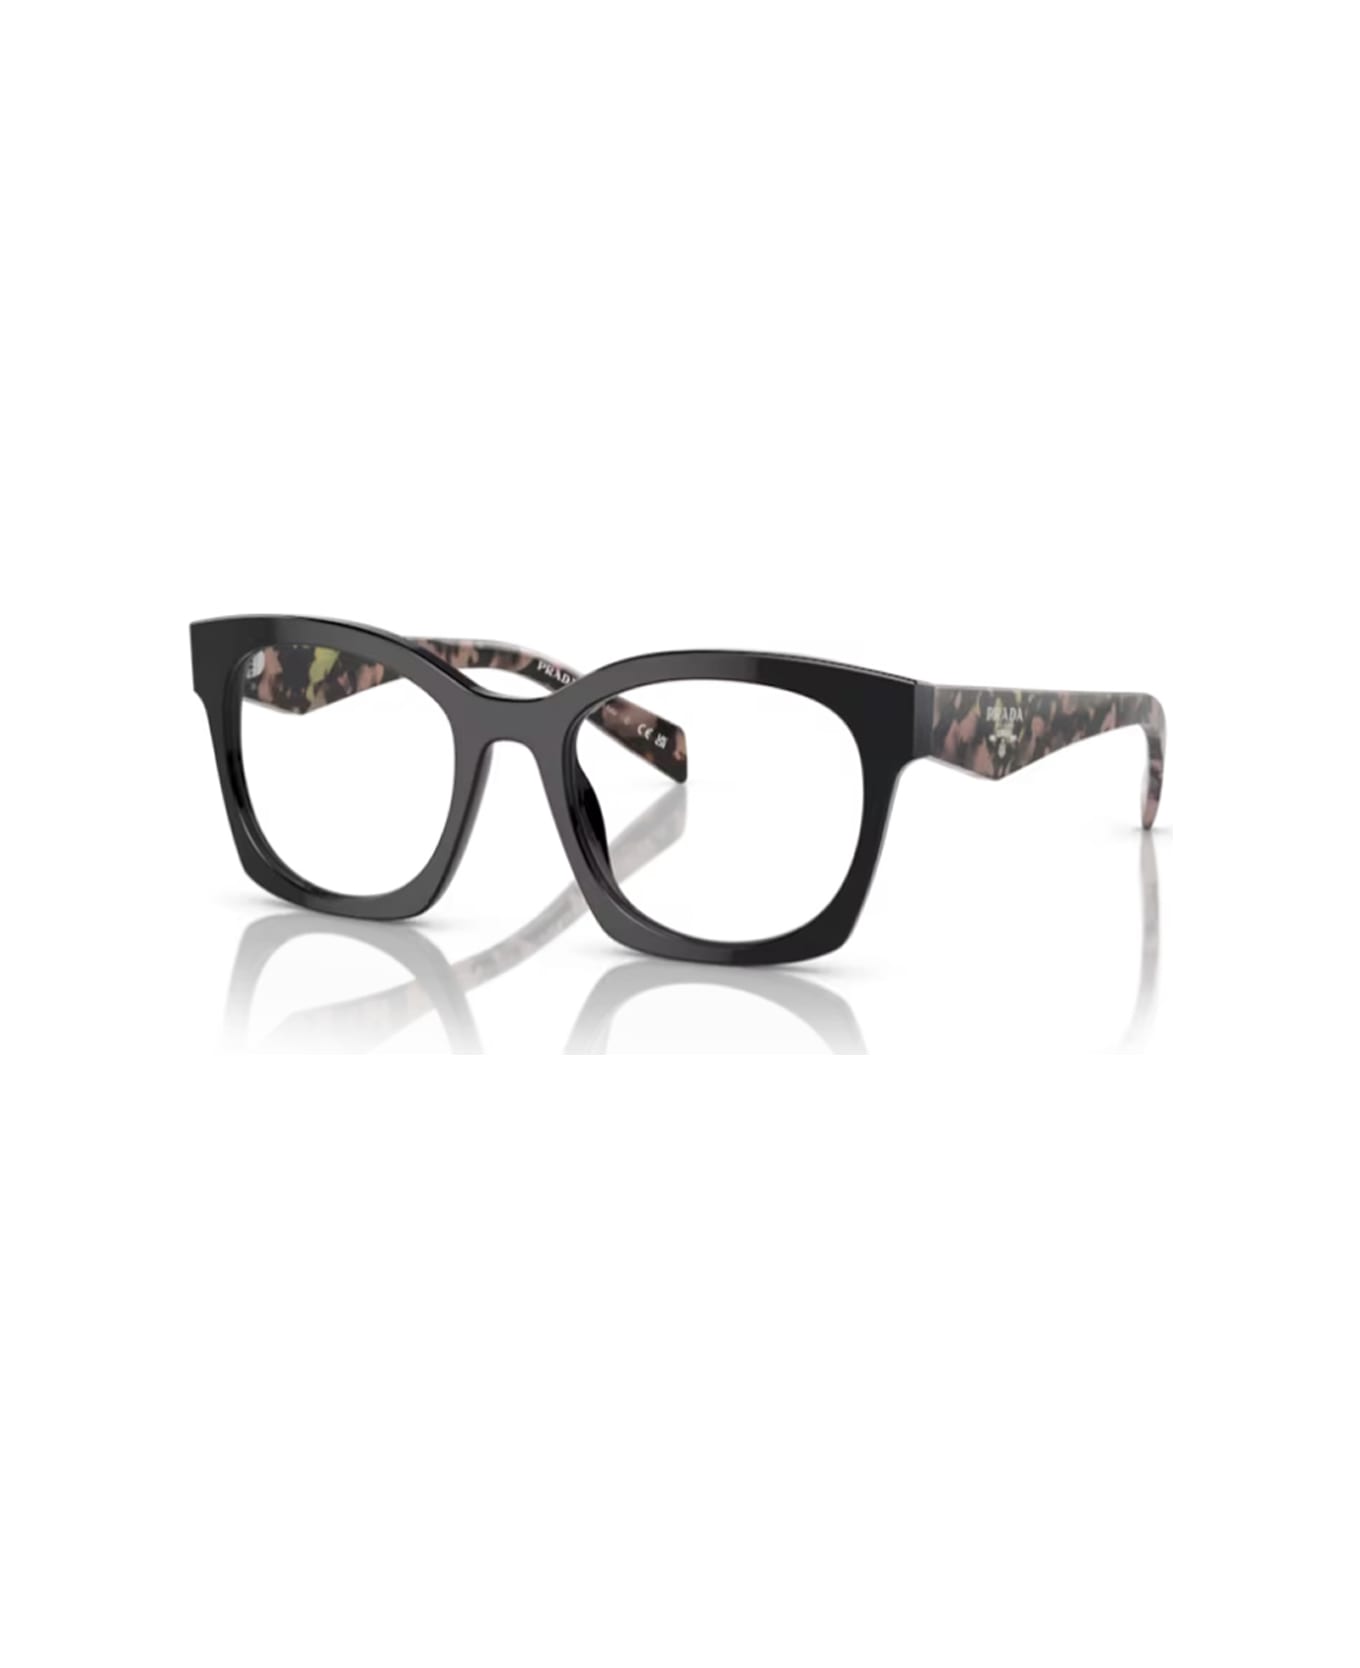 Prada Eyewear Pra05v 13p1o1 Glasses - Nero